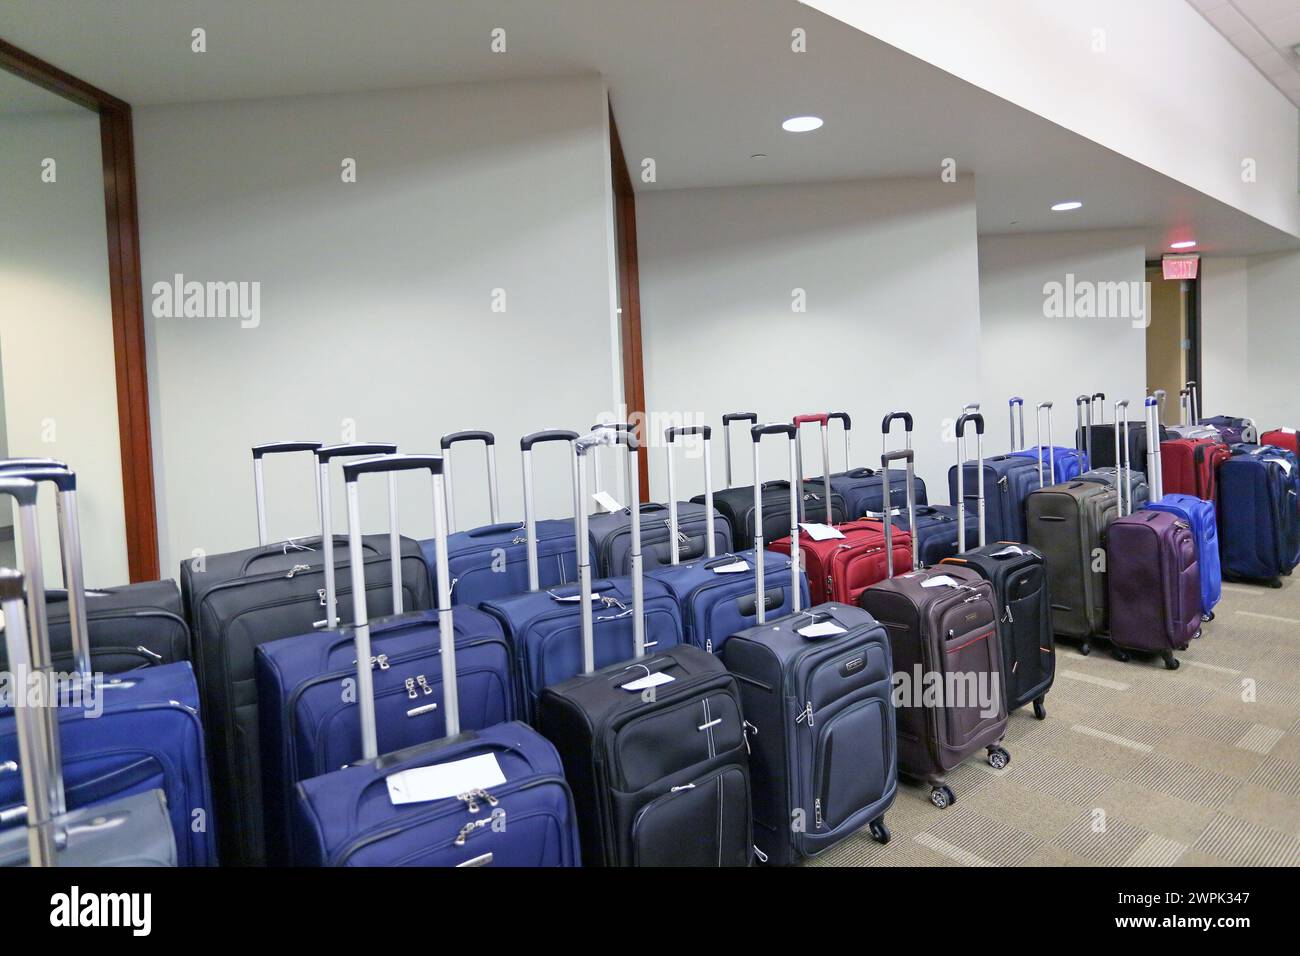 muchas maletas alineadas Foto de stock